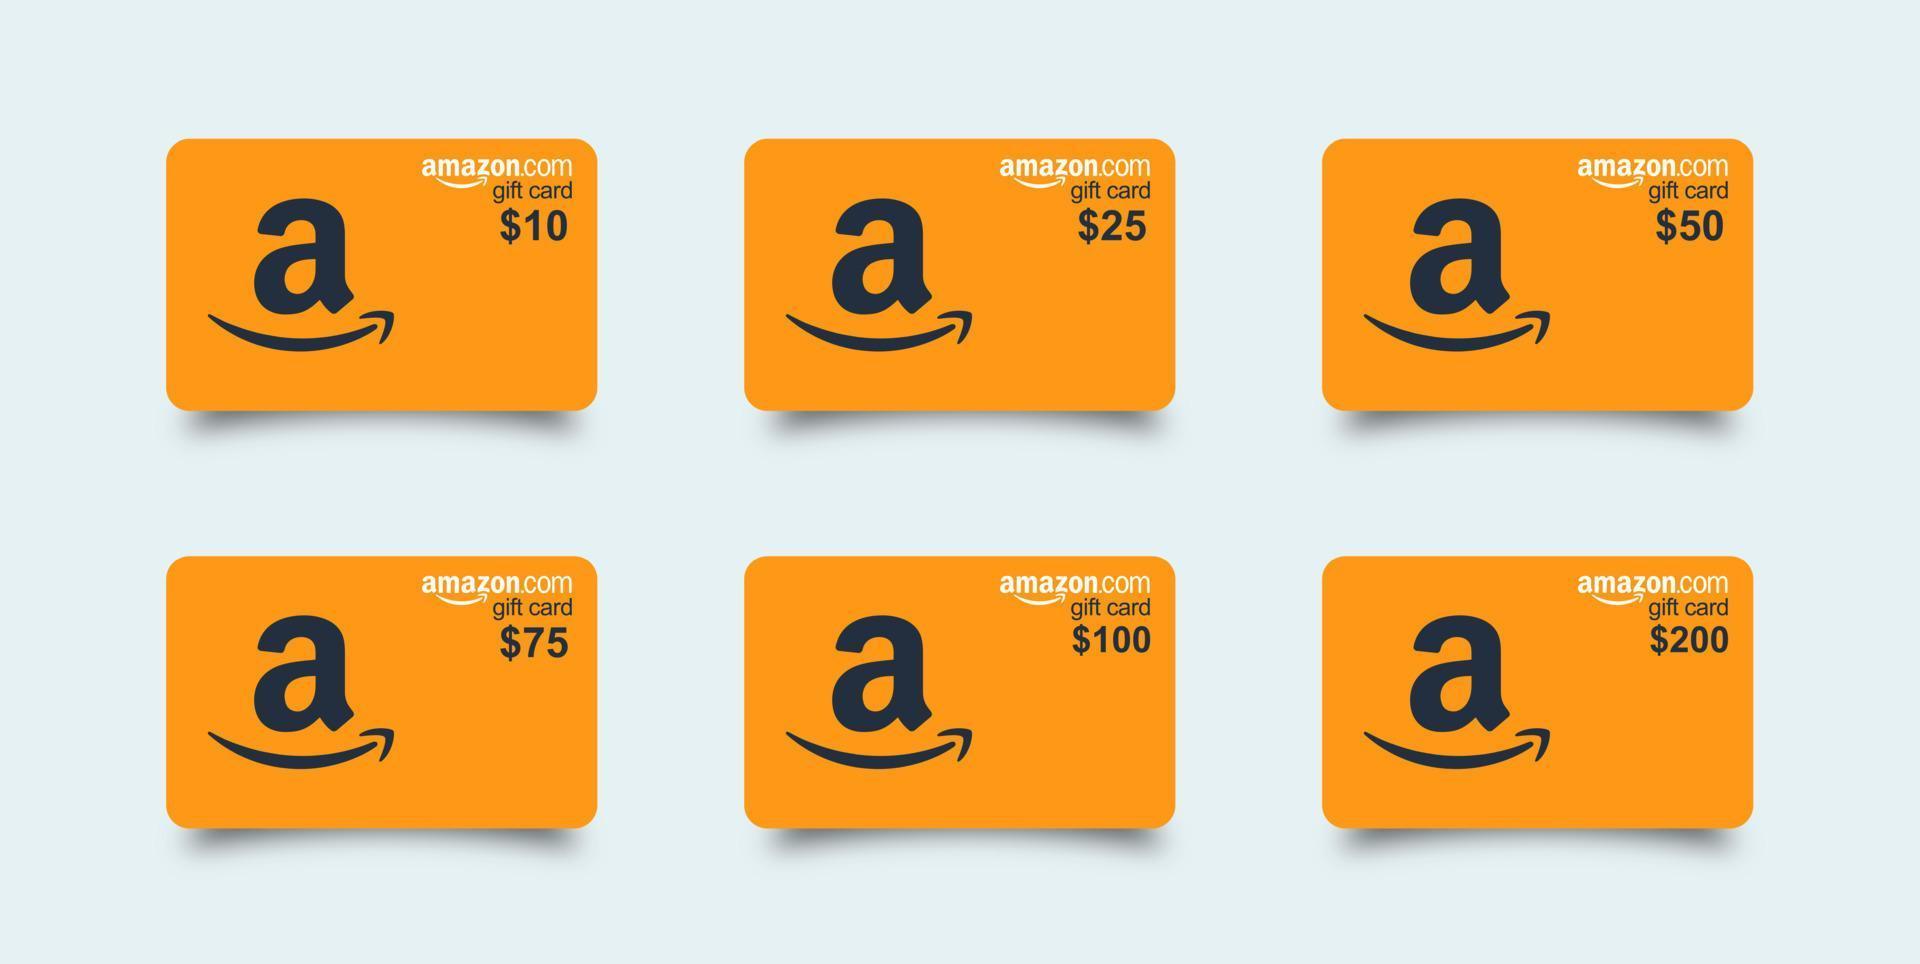 set di carte regalo amazon. carta regalo Amazon realistica arancione con set di ombre 10, 25, 50, 75, 100, 200. carta regalo in plastica isolata su sfondo bianco. vettore